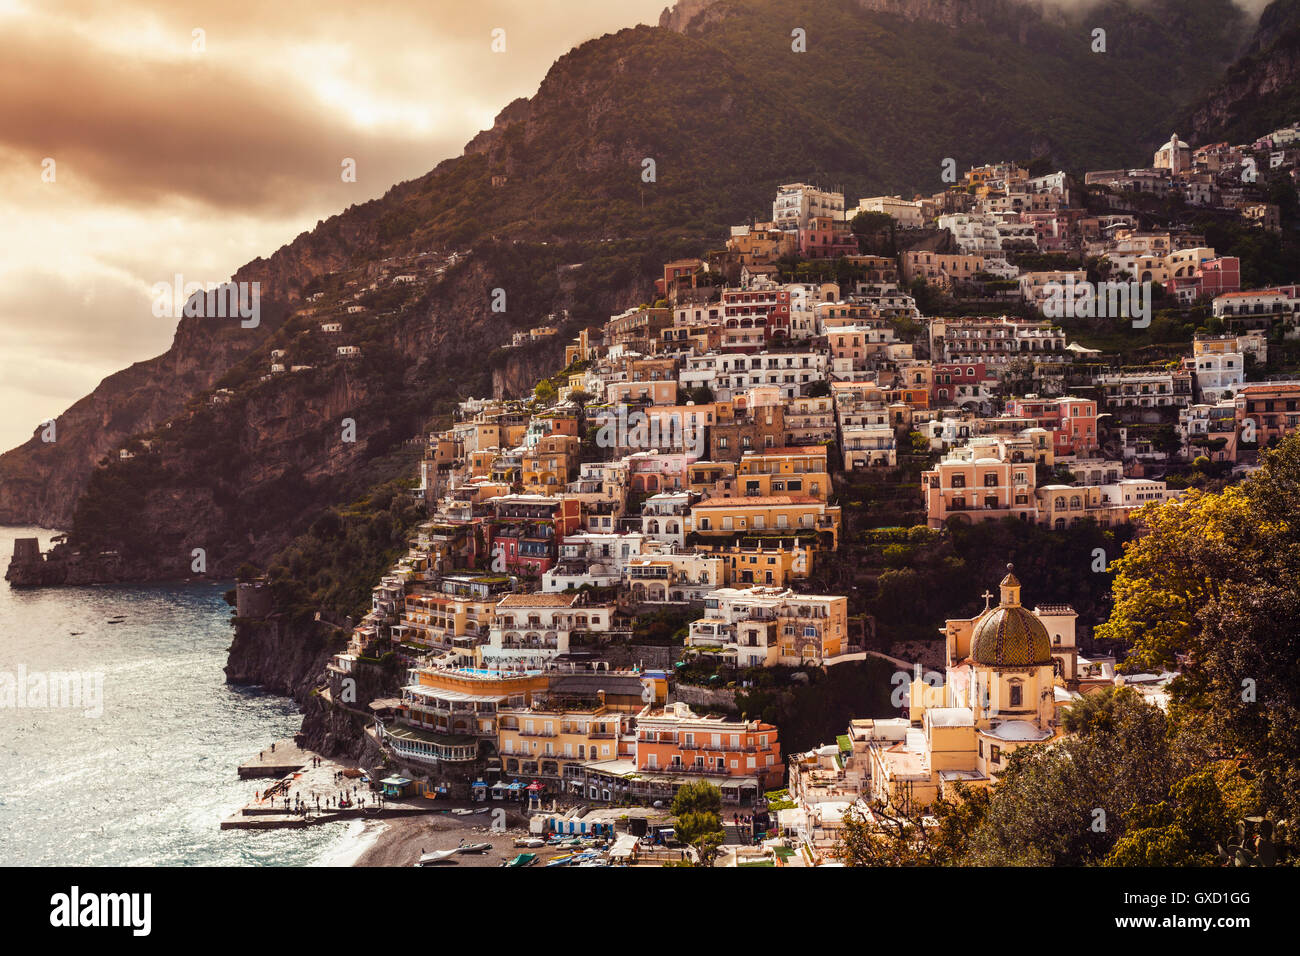 Klippe Seite Gebäude, Positano, Amalfi Küste, Italien Stockfoto